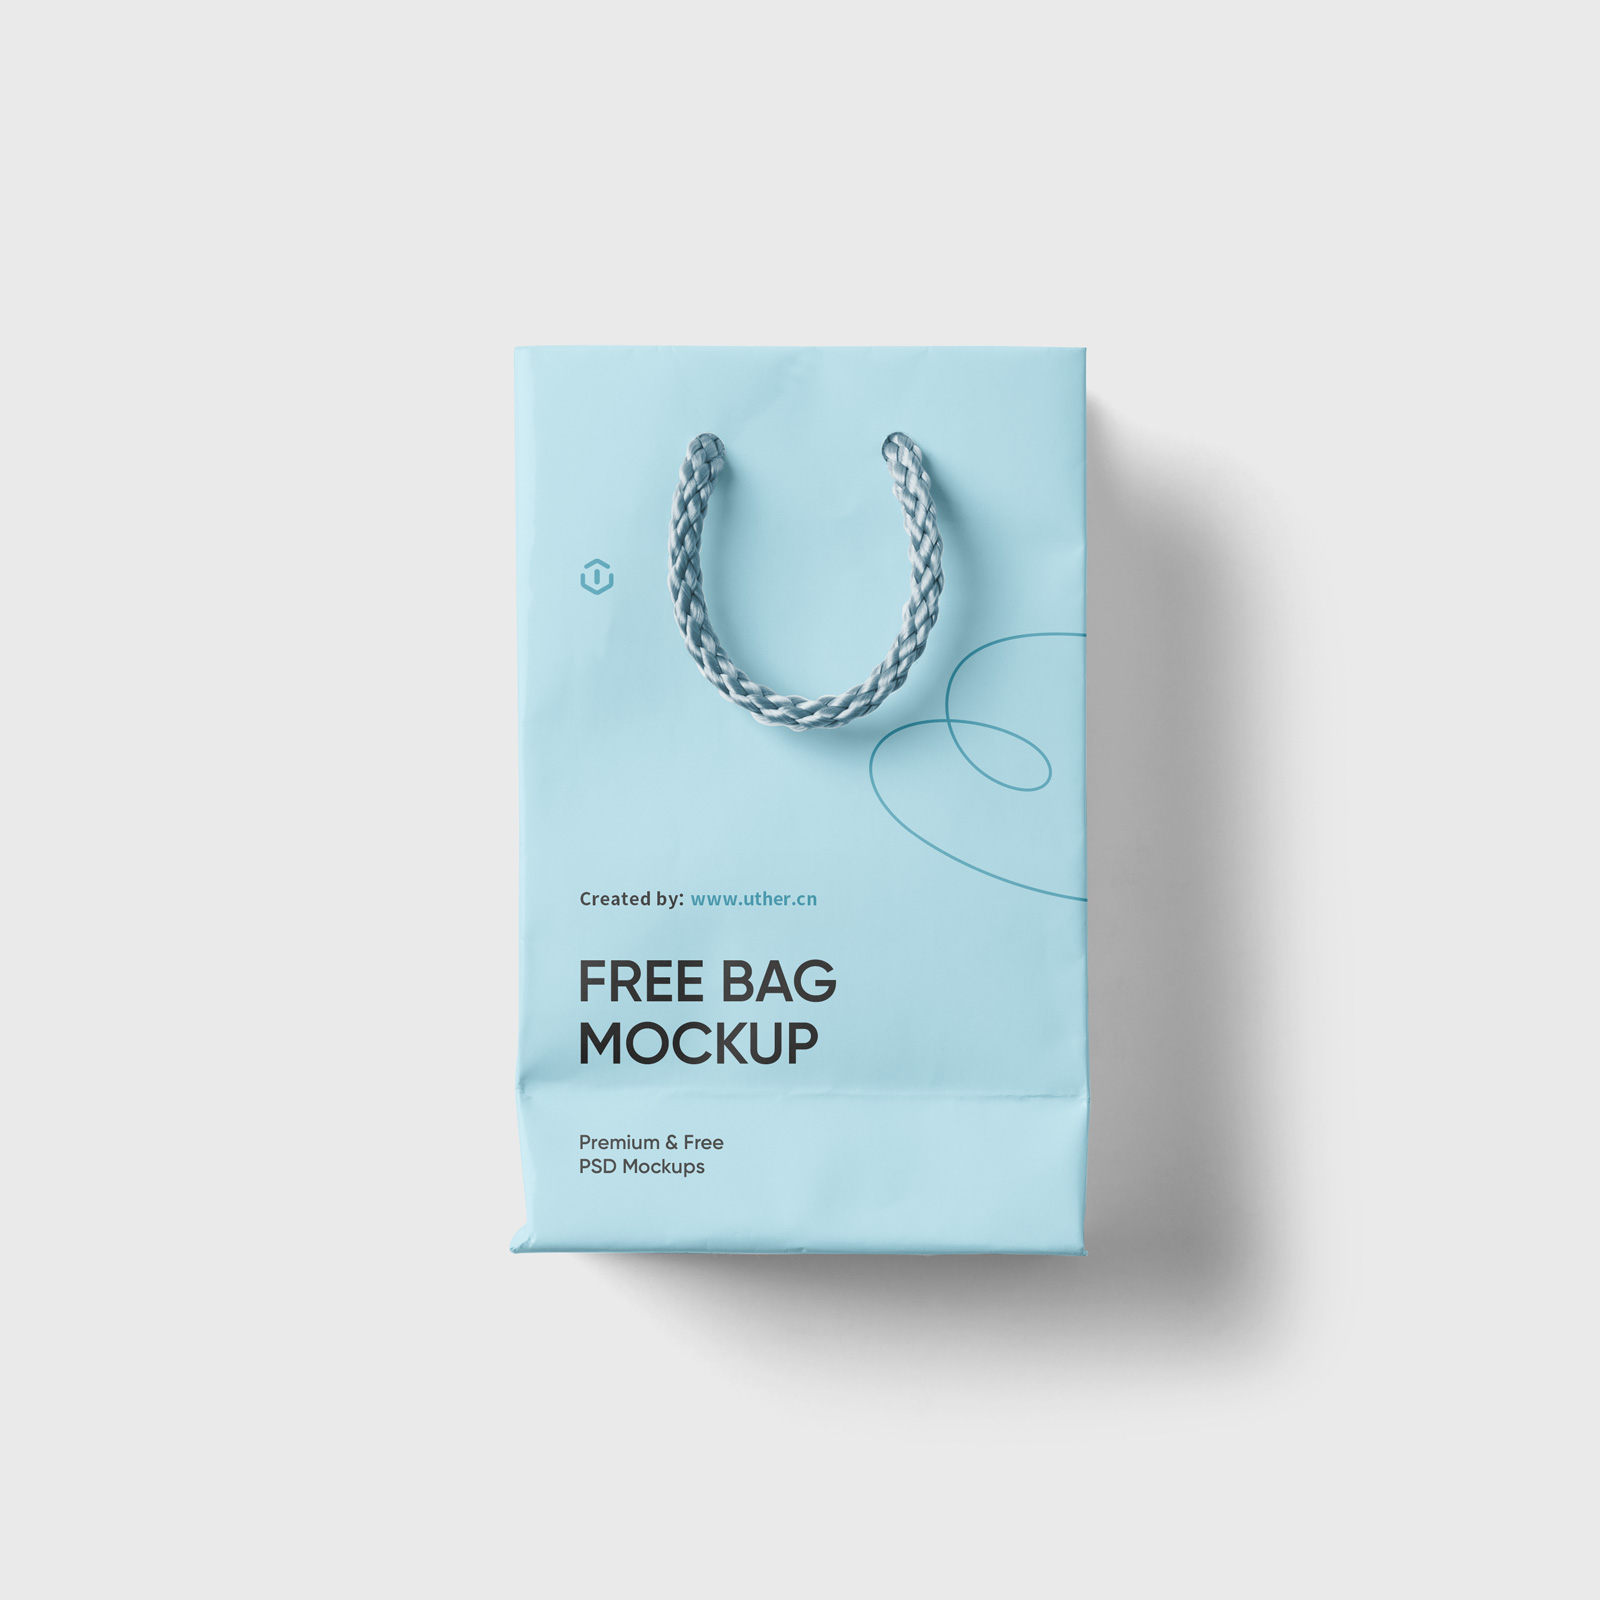 高质量礼品袋纸袋样机模型Gift Bag Mockup .psd素材